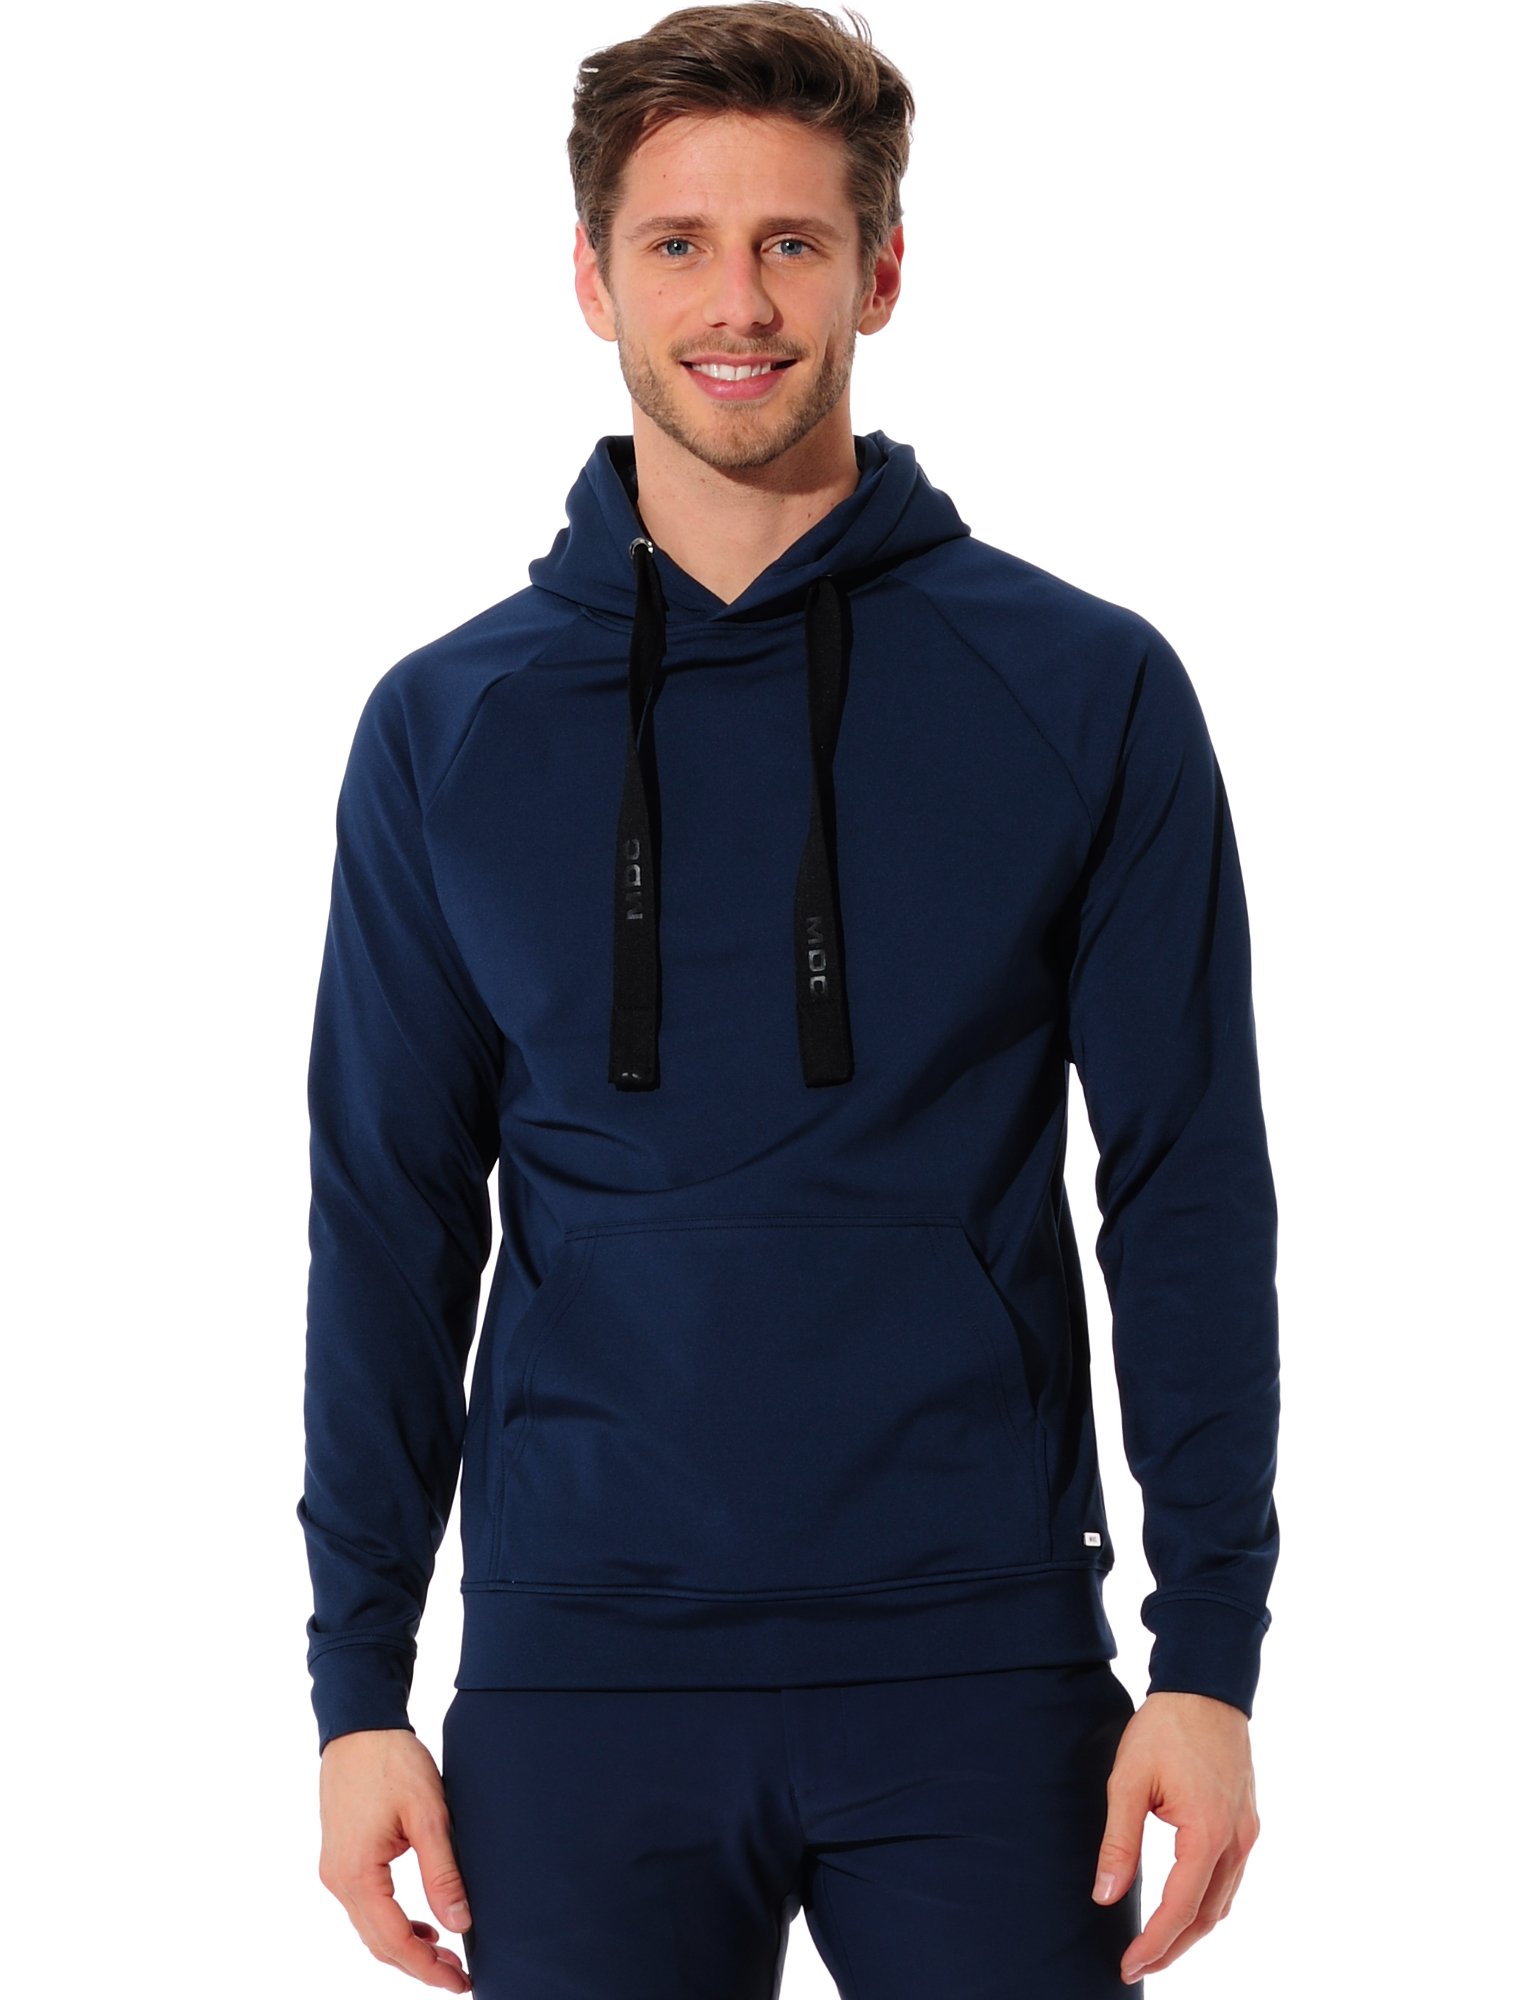 Softex hoodie navy 